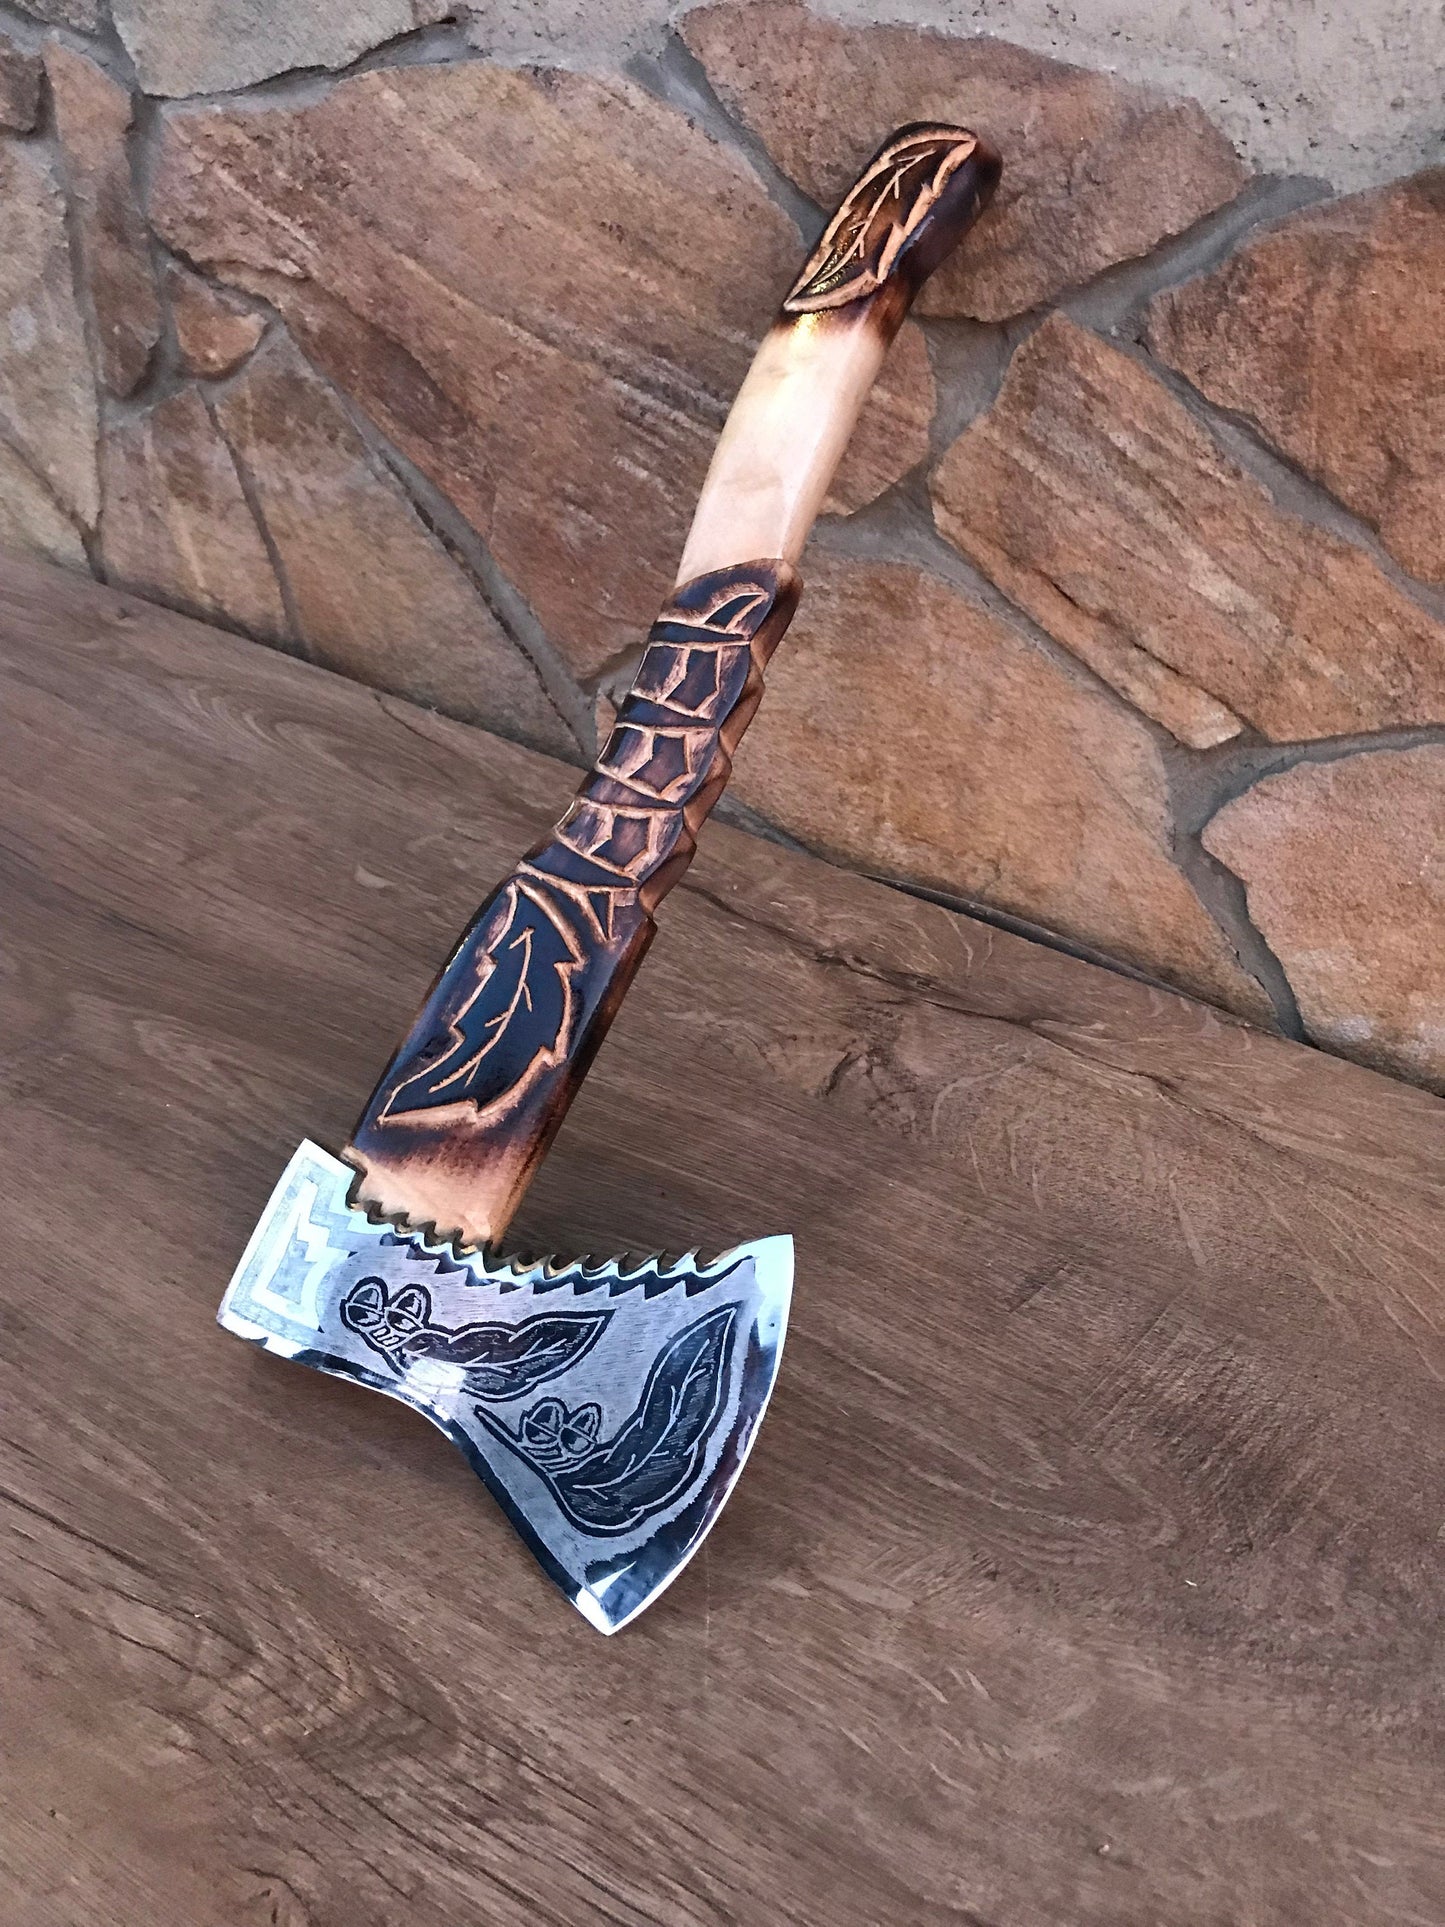 Dragon axe, viking axe, dragon, medieval axe, axe, dragon decor, mens gifts, iron gift for him, chopping axe, gifts for men, mens gifts